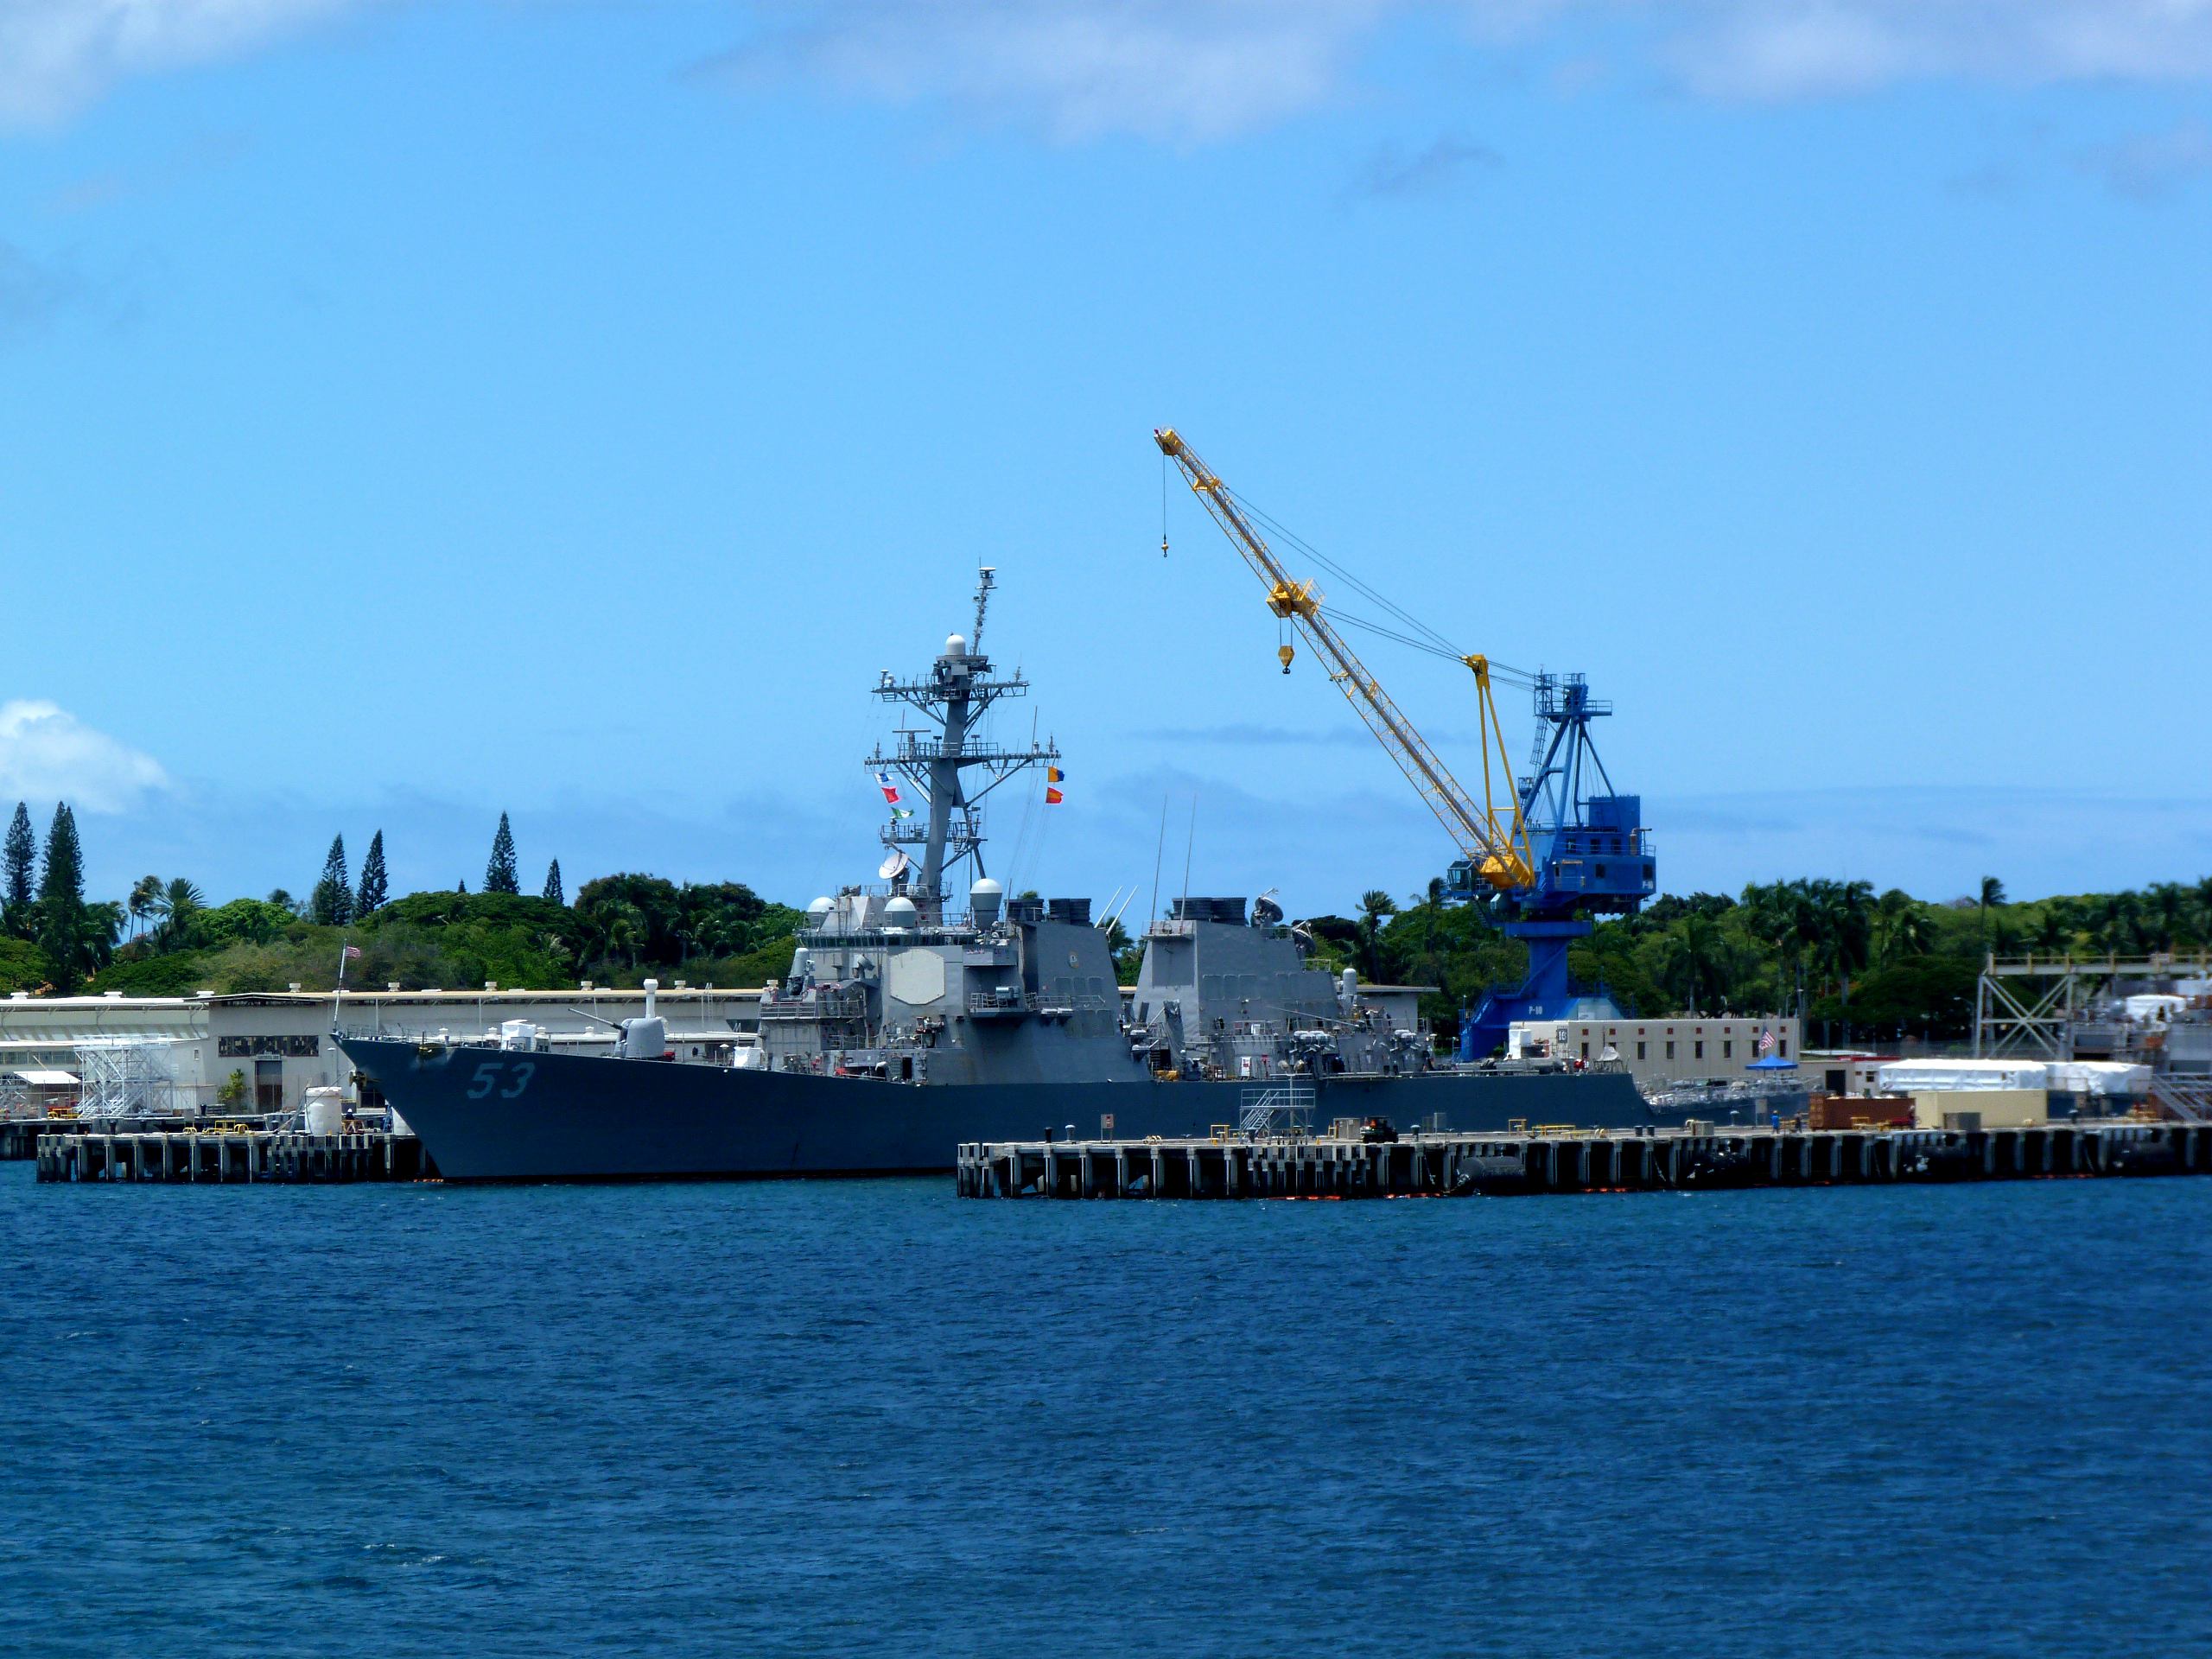 珍珠港同时也是美国太平洋舰队司令部所在地,所以在海边也能同时看到